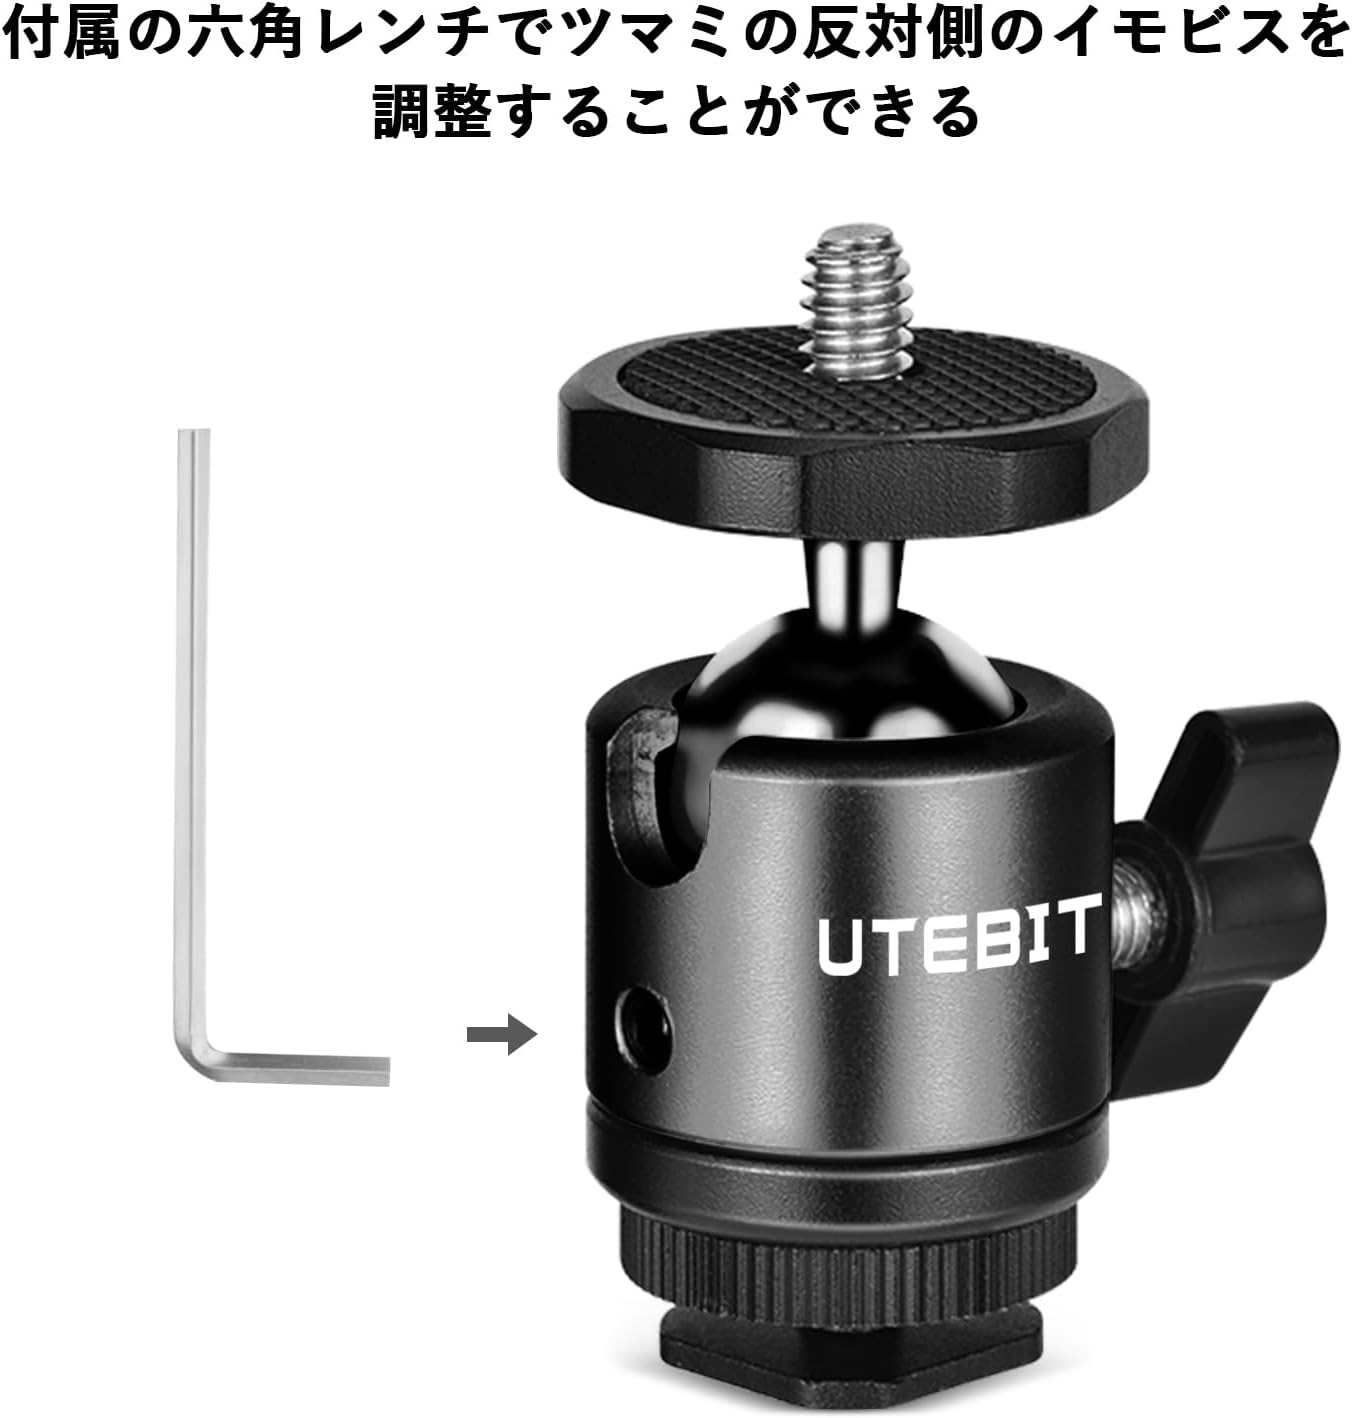 UTEBIT カメラ 自由雲台 小型 【2点入り】 ホットシュー 雲台 ボール雲台 360°回転可 超ミニ ホットシュー 自由雲台 耐荷重 –  1588通販